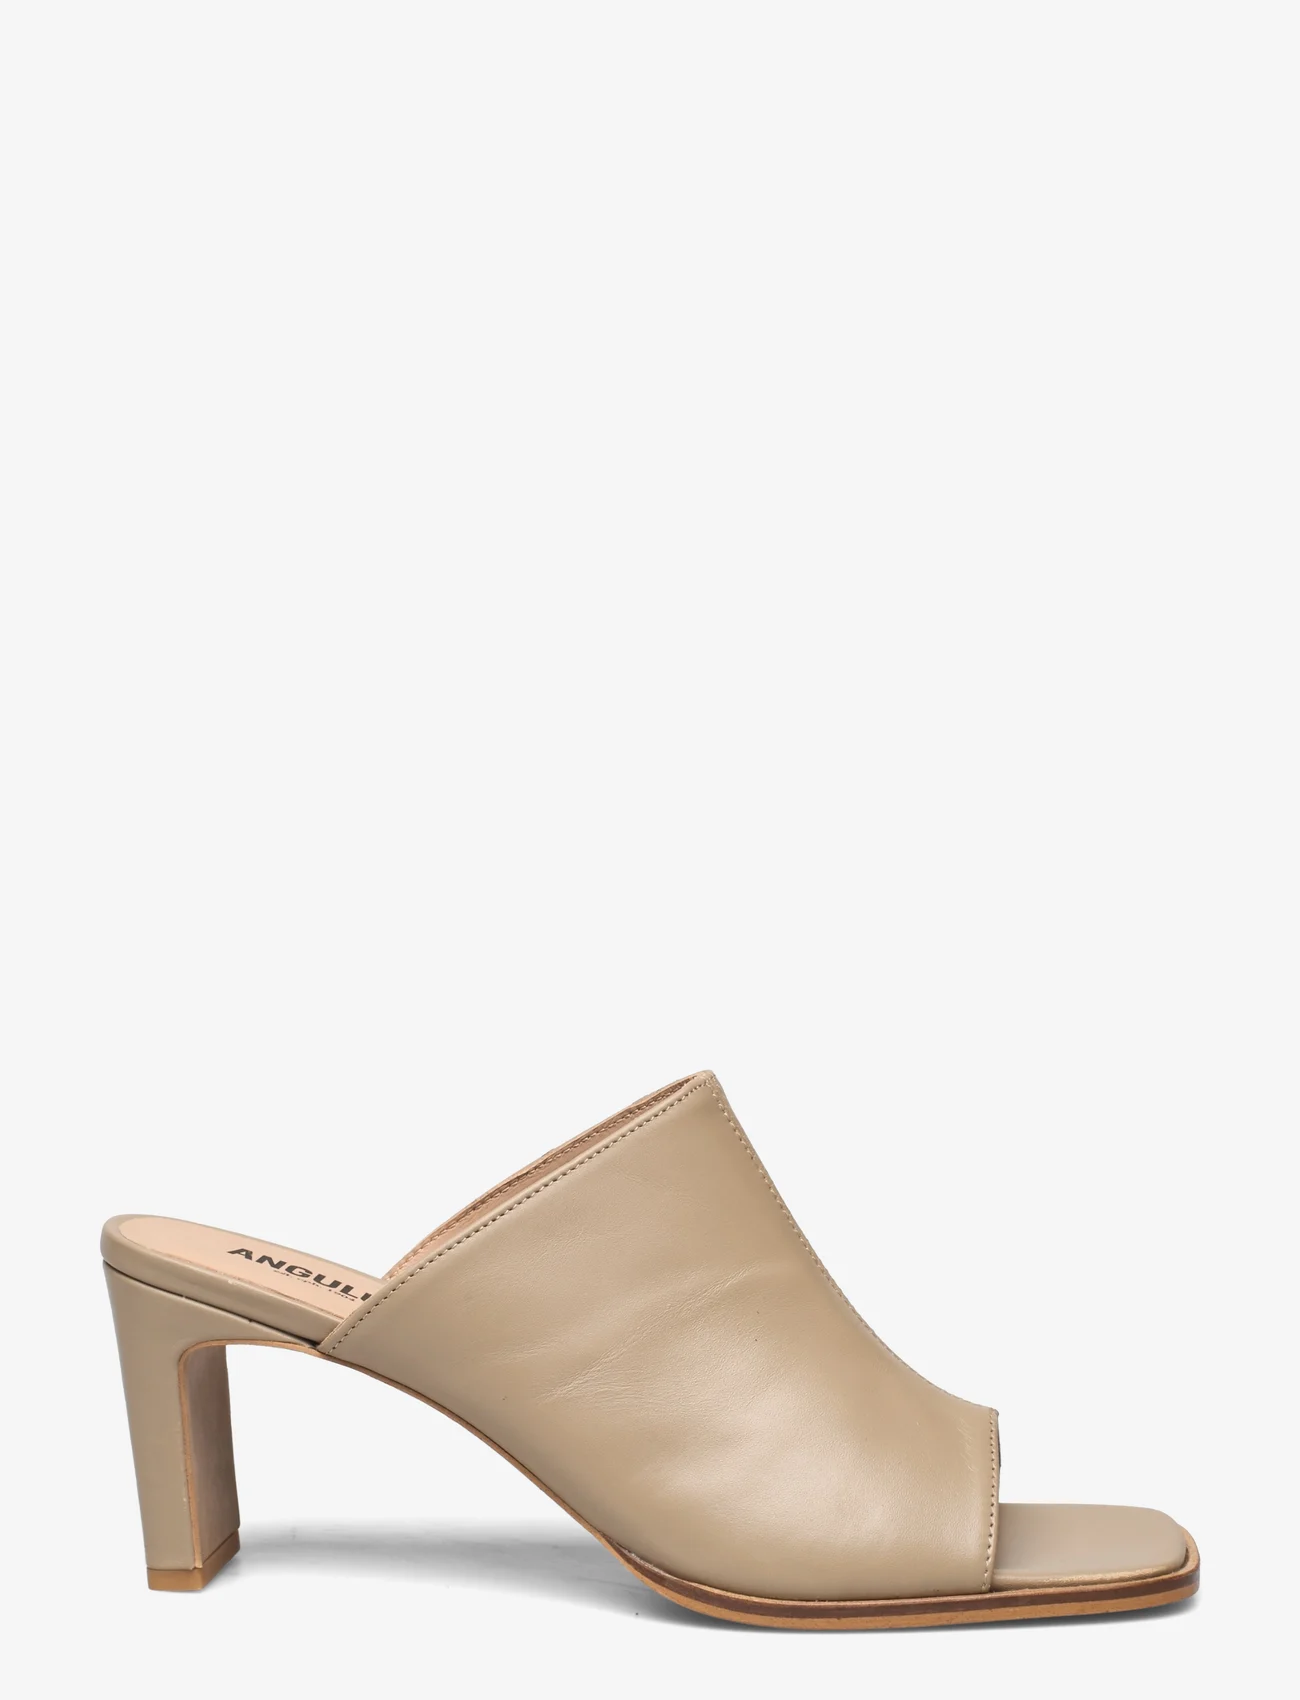 ANGULUS - Sandals - Block heels - basutės su kulnu - 1571 beige - 1